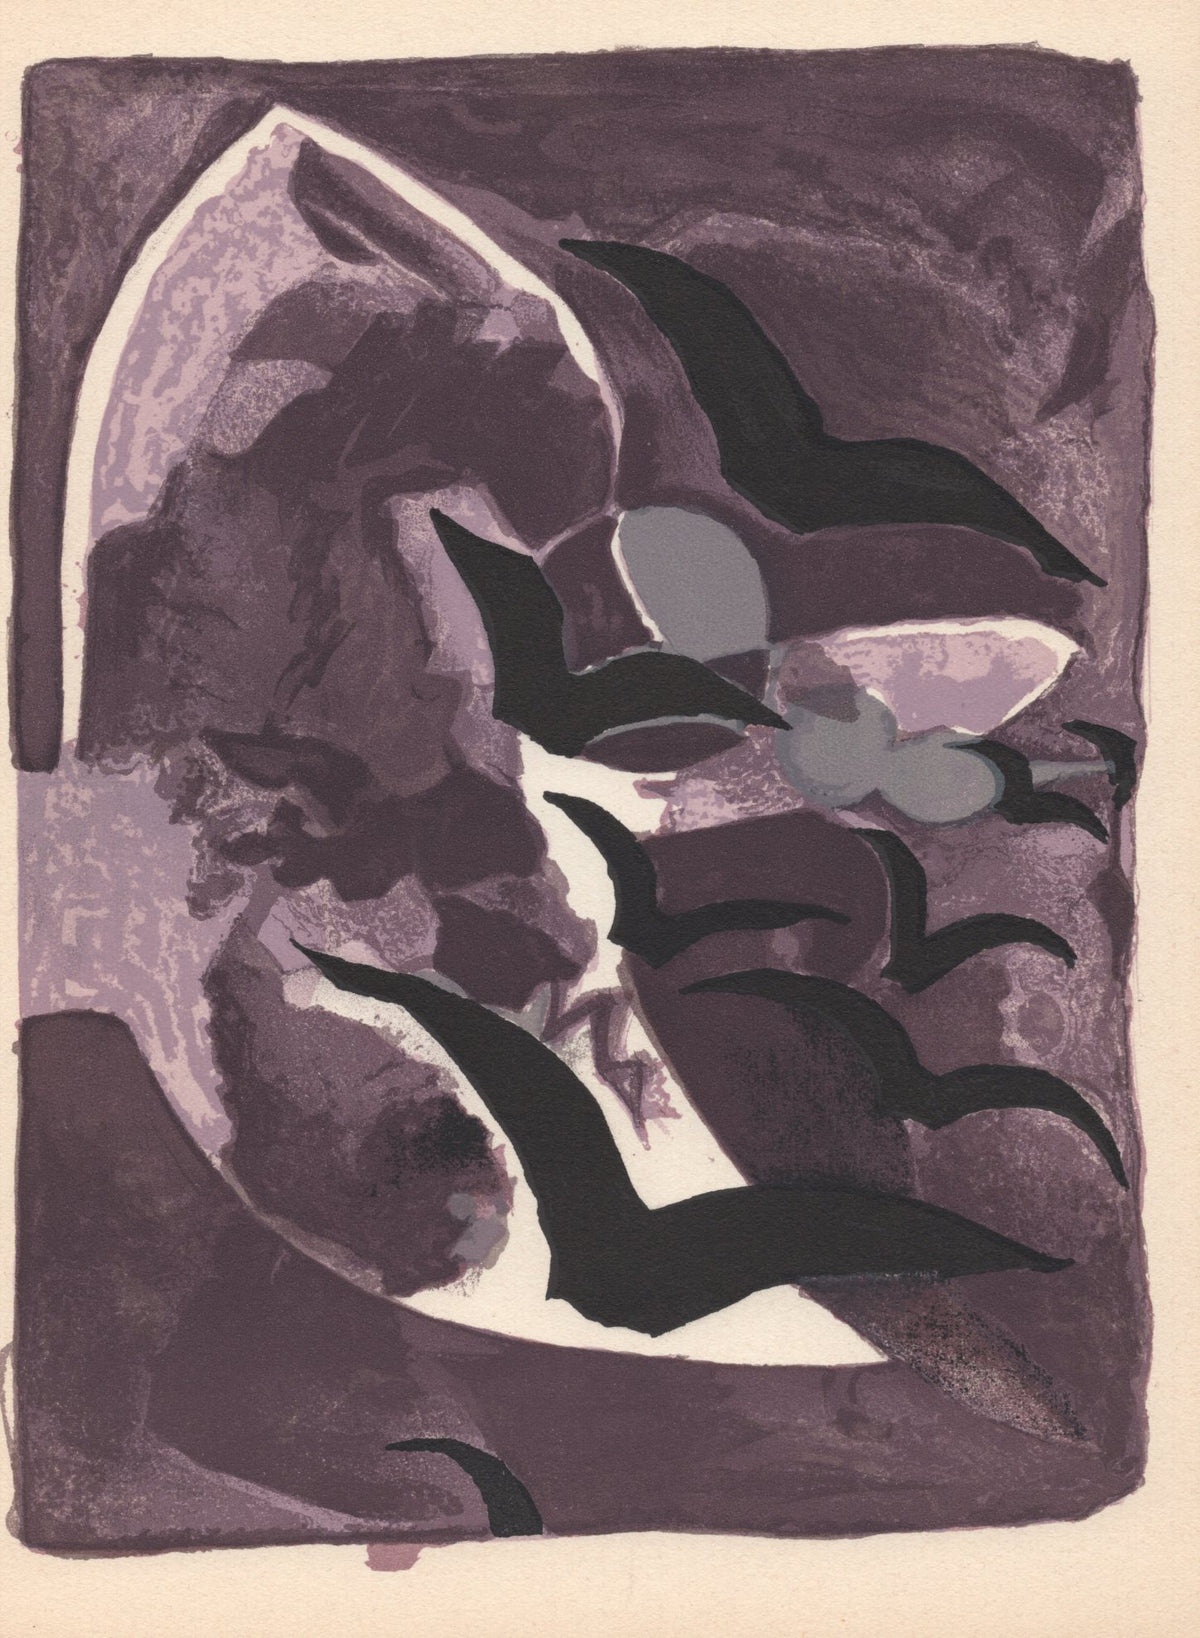 Georges Braque - &quot;Les oiseaux de nuit&quot; - Mourlot Press 1964 Lithograph - 7.5 x 10&quot;